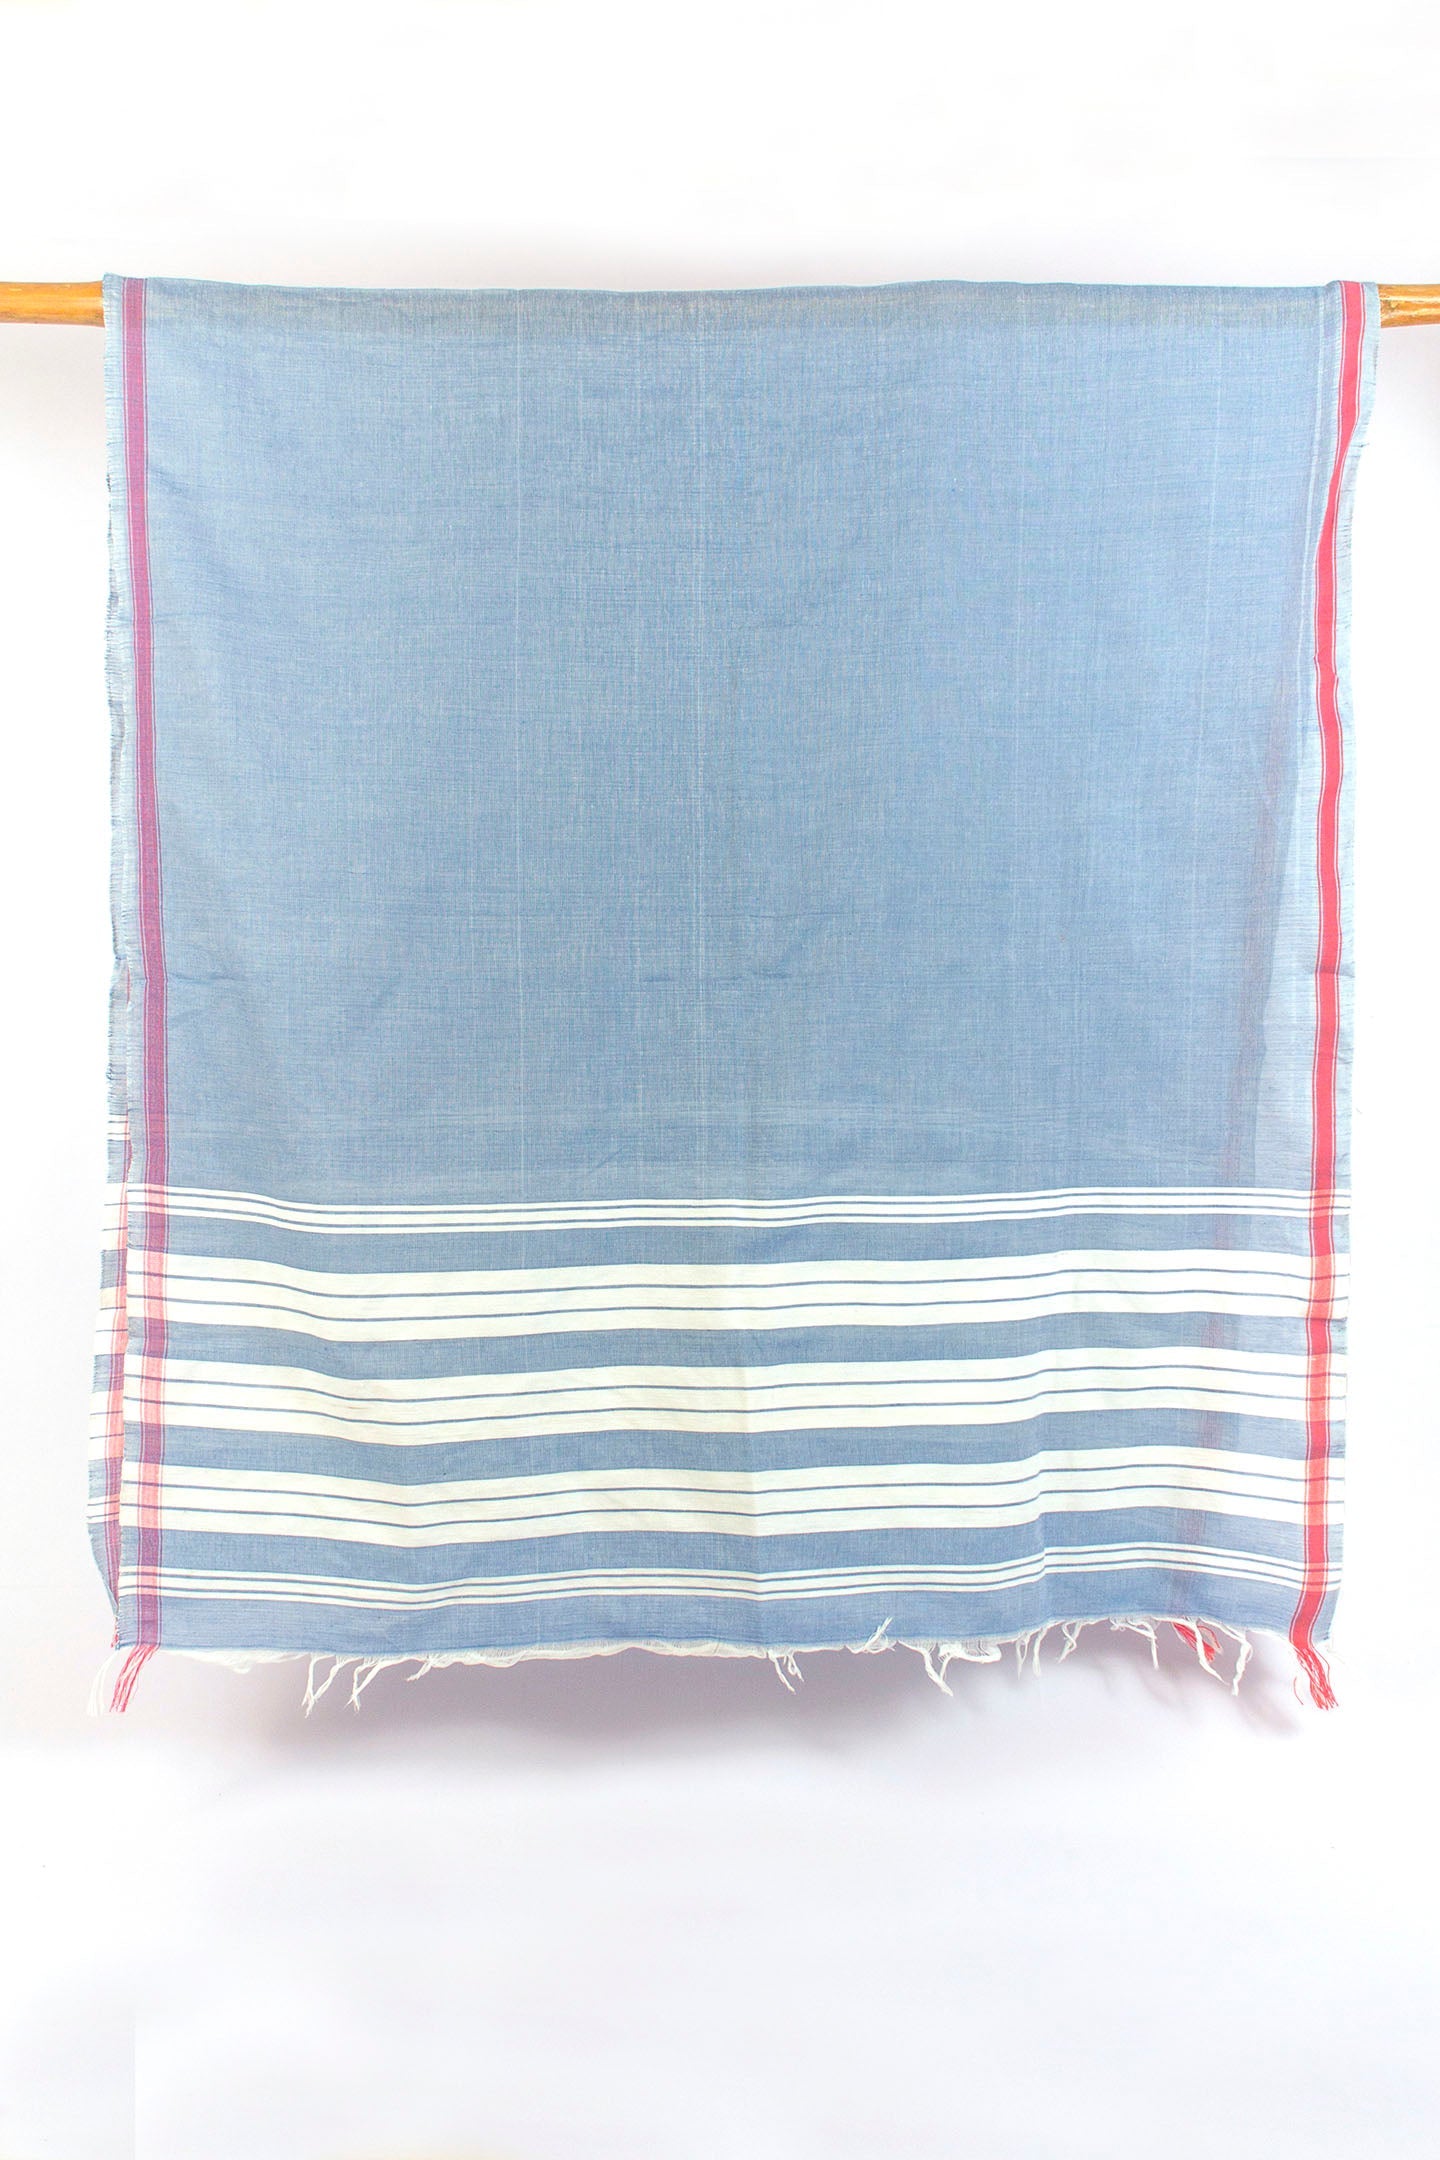 कॉटन गामुसा तौलिया पानी (ऑर्डर करने के लिए बनाया गया)